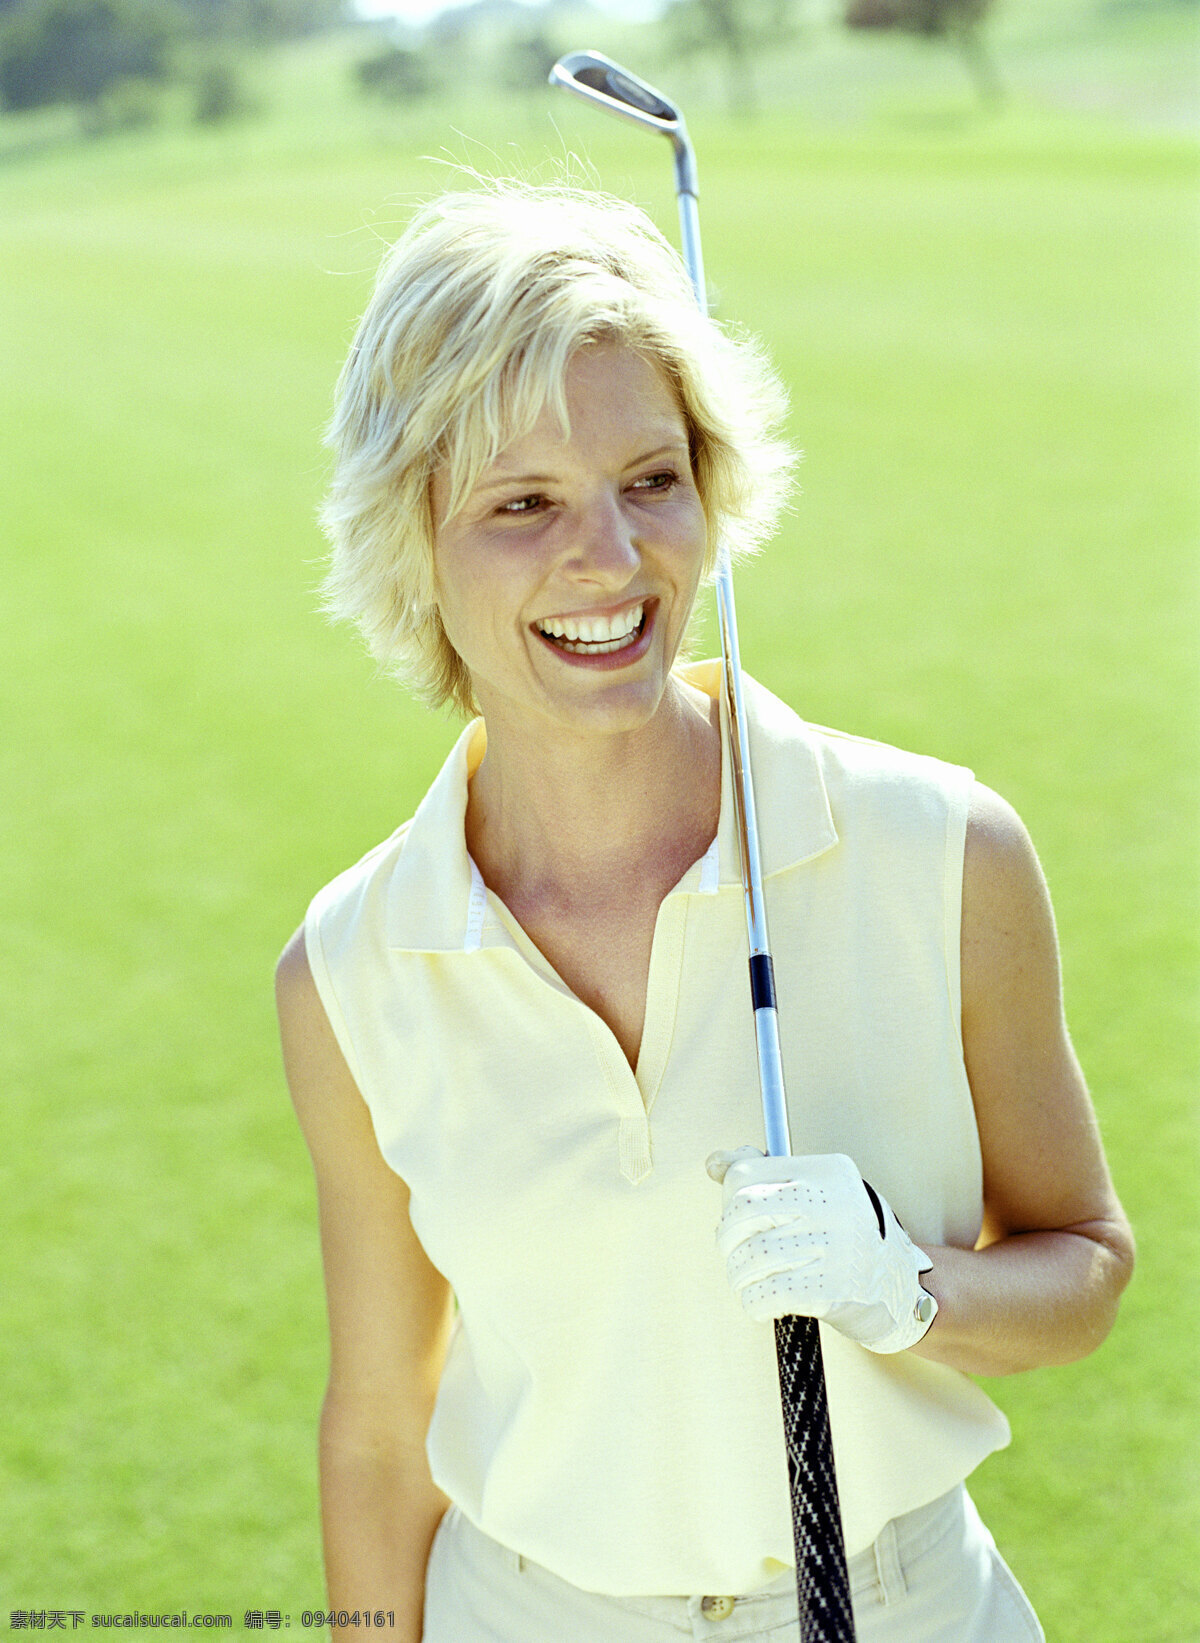 球场 上 微笑 女人 高尔夫球 打高尔夫球 高尔夫球杆 高尔夫球场 贵族运动 休闲运动 尊贵运动 女性 外国人物 体育运动 生活百科 绿色